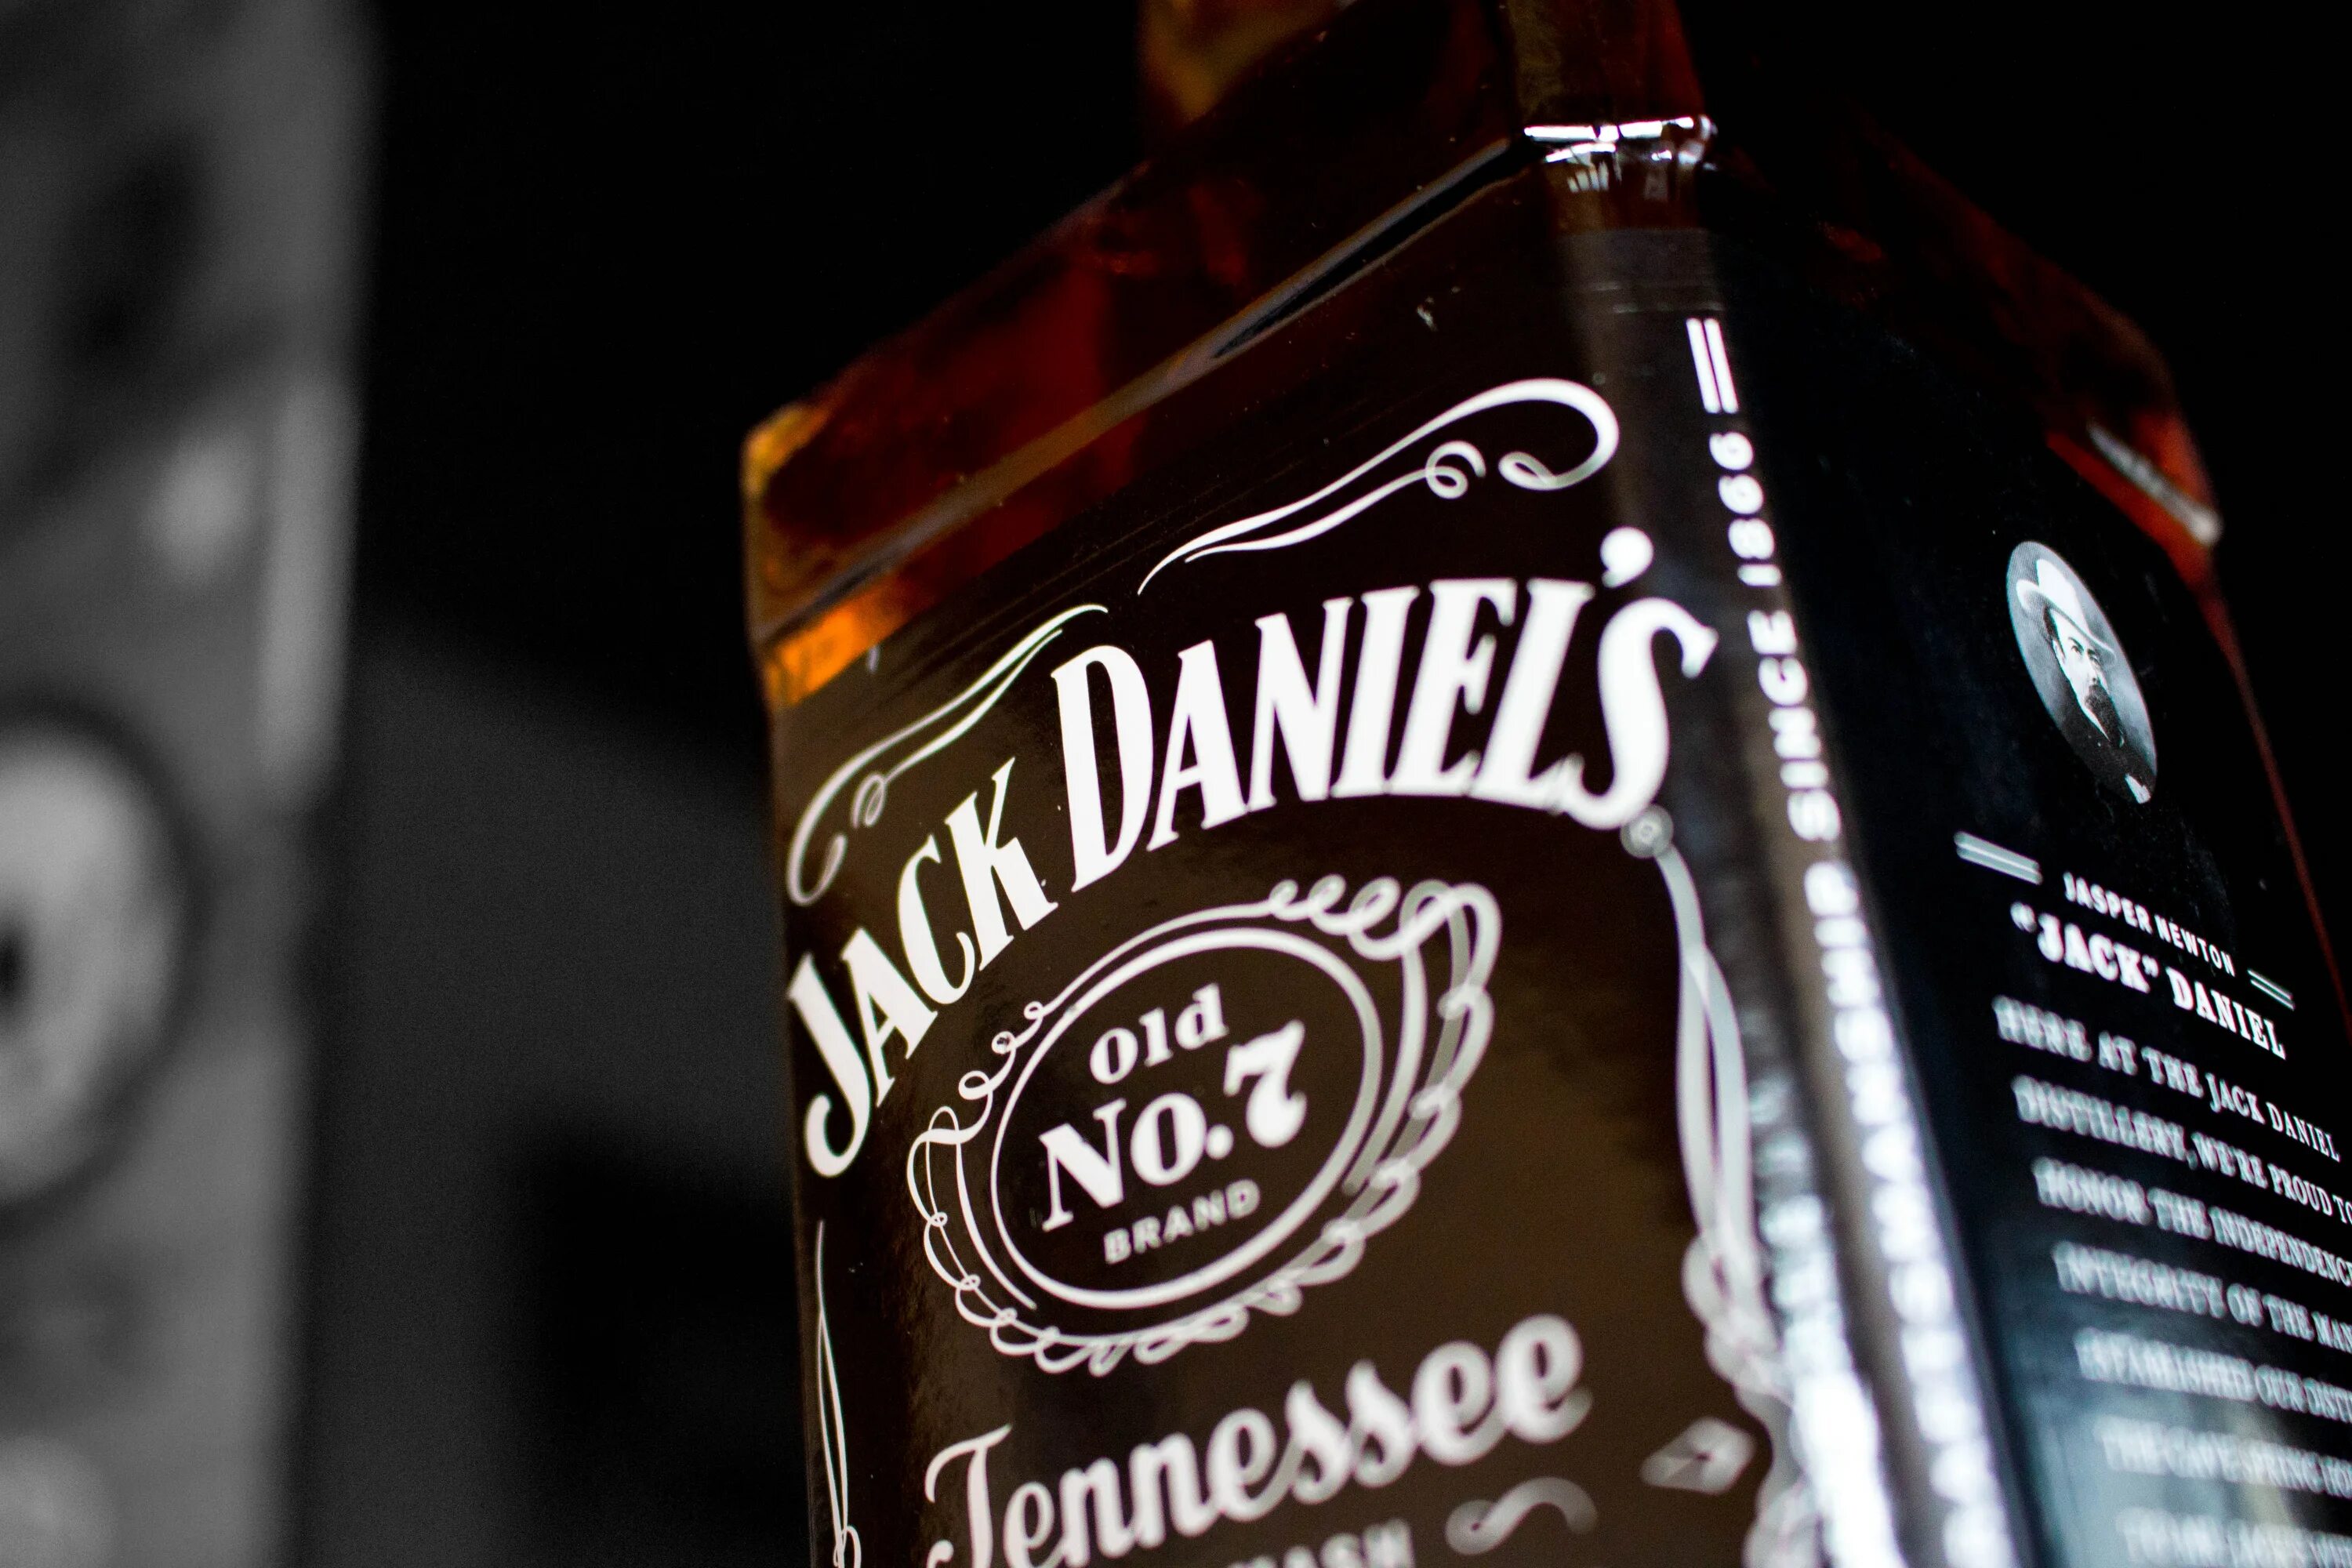 Джек дэниэлс это. Алкоголь Джек Дэниэлс. Джек Дэниел. Джек Дэниэлс 50 градусов.